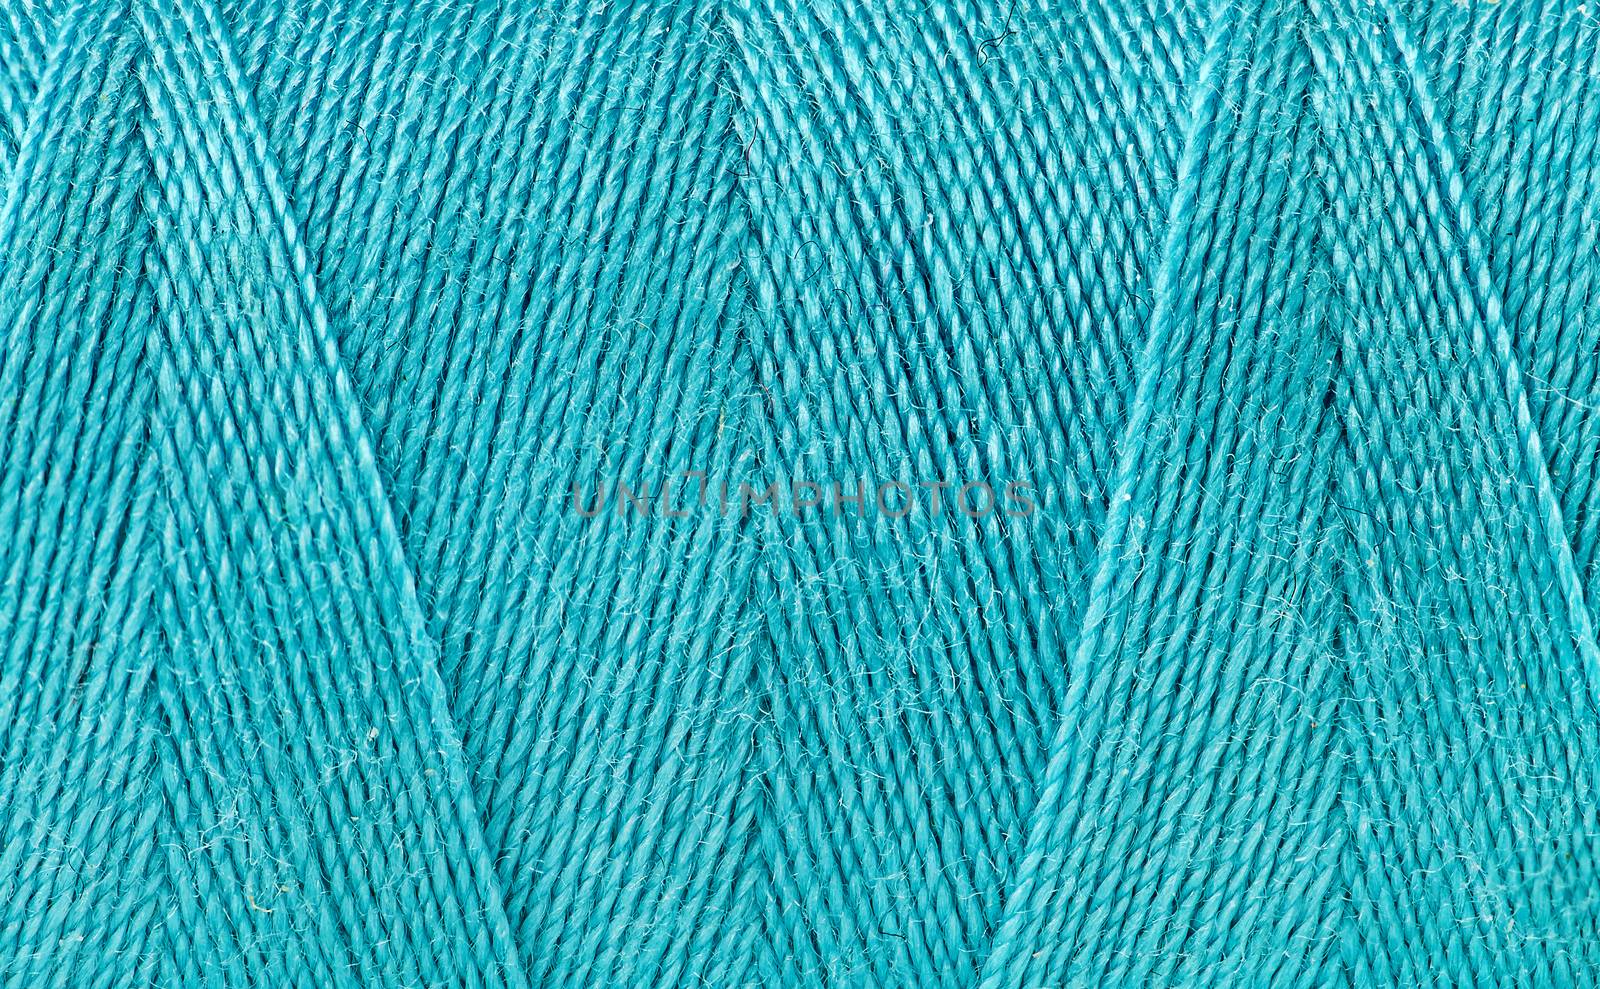 Blue thread spooled on a bobbin by Cipariss